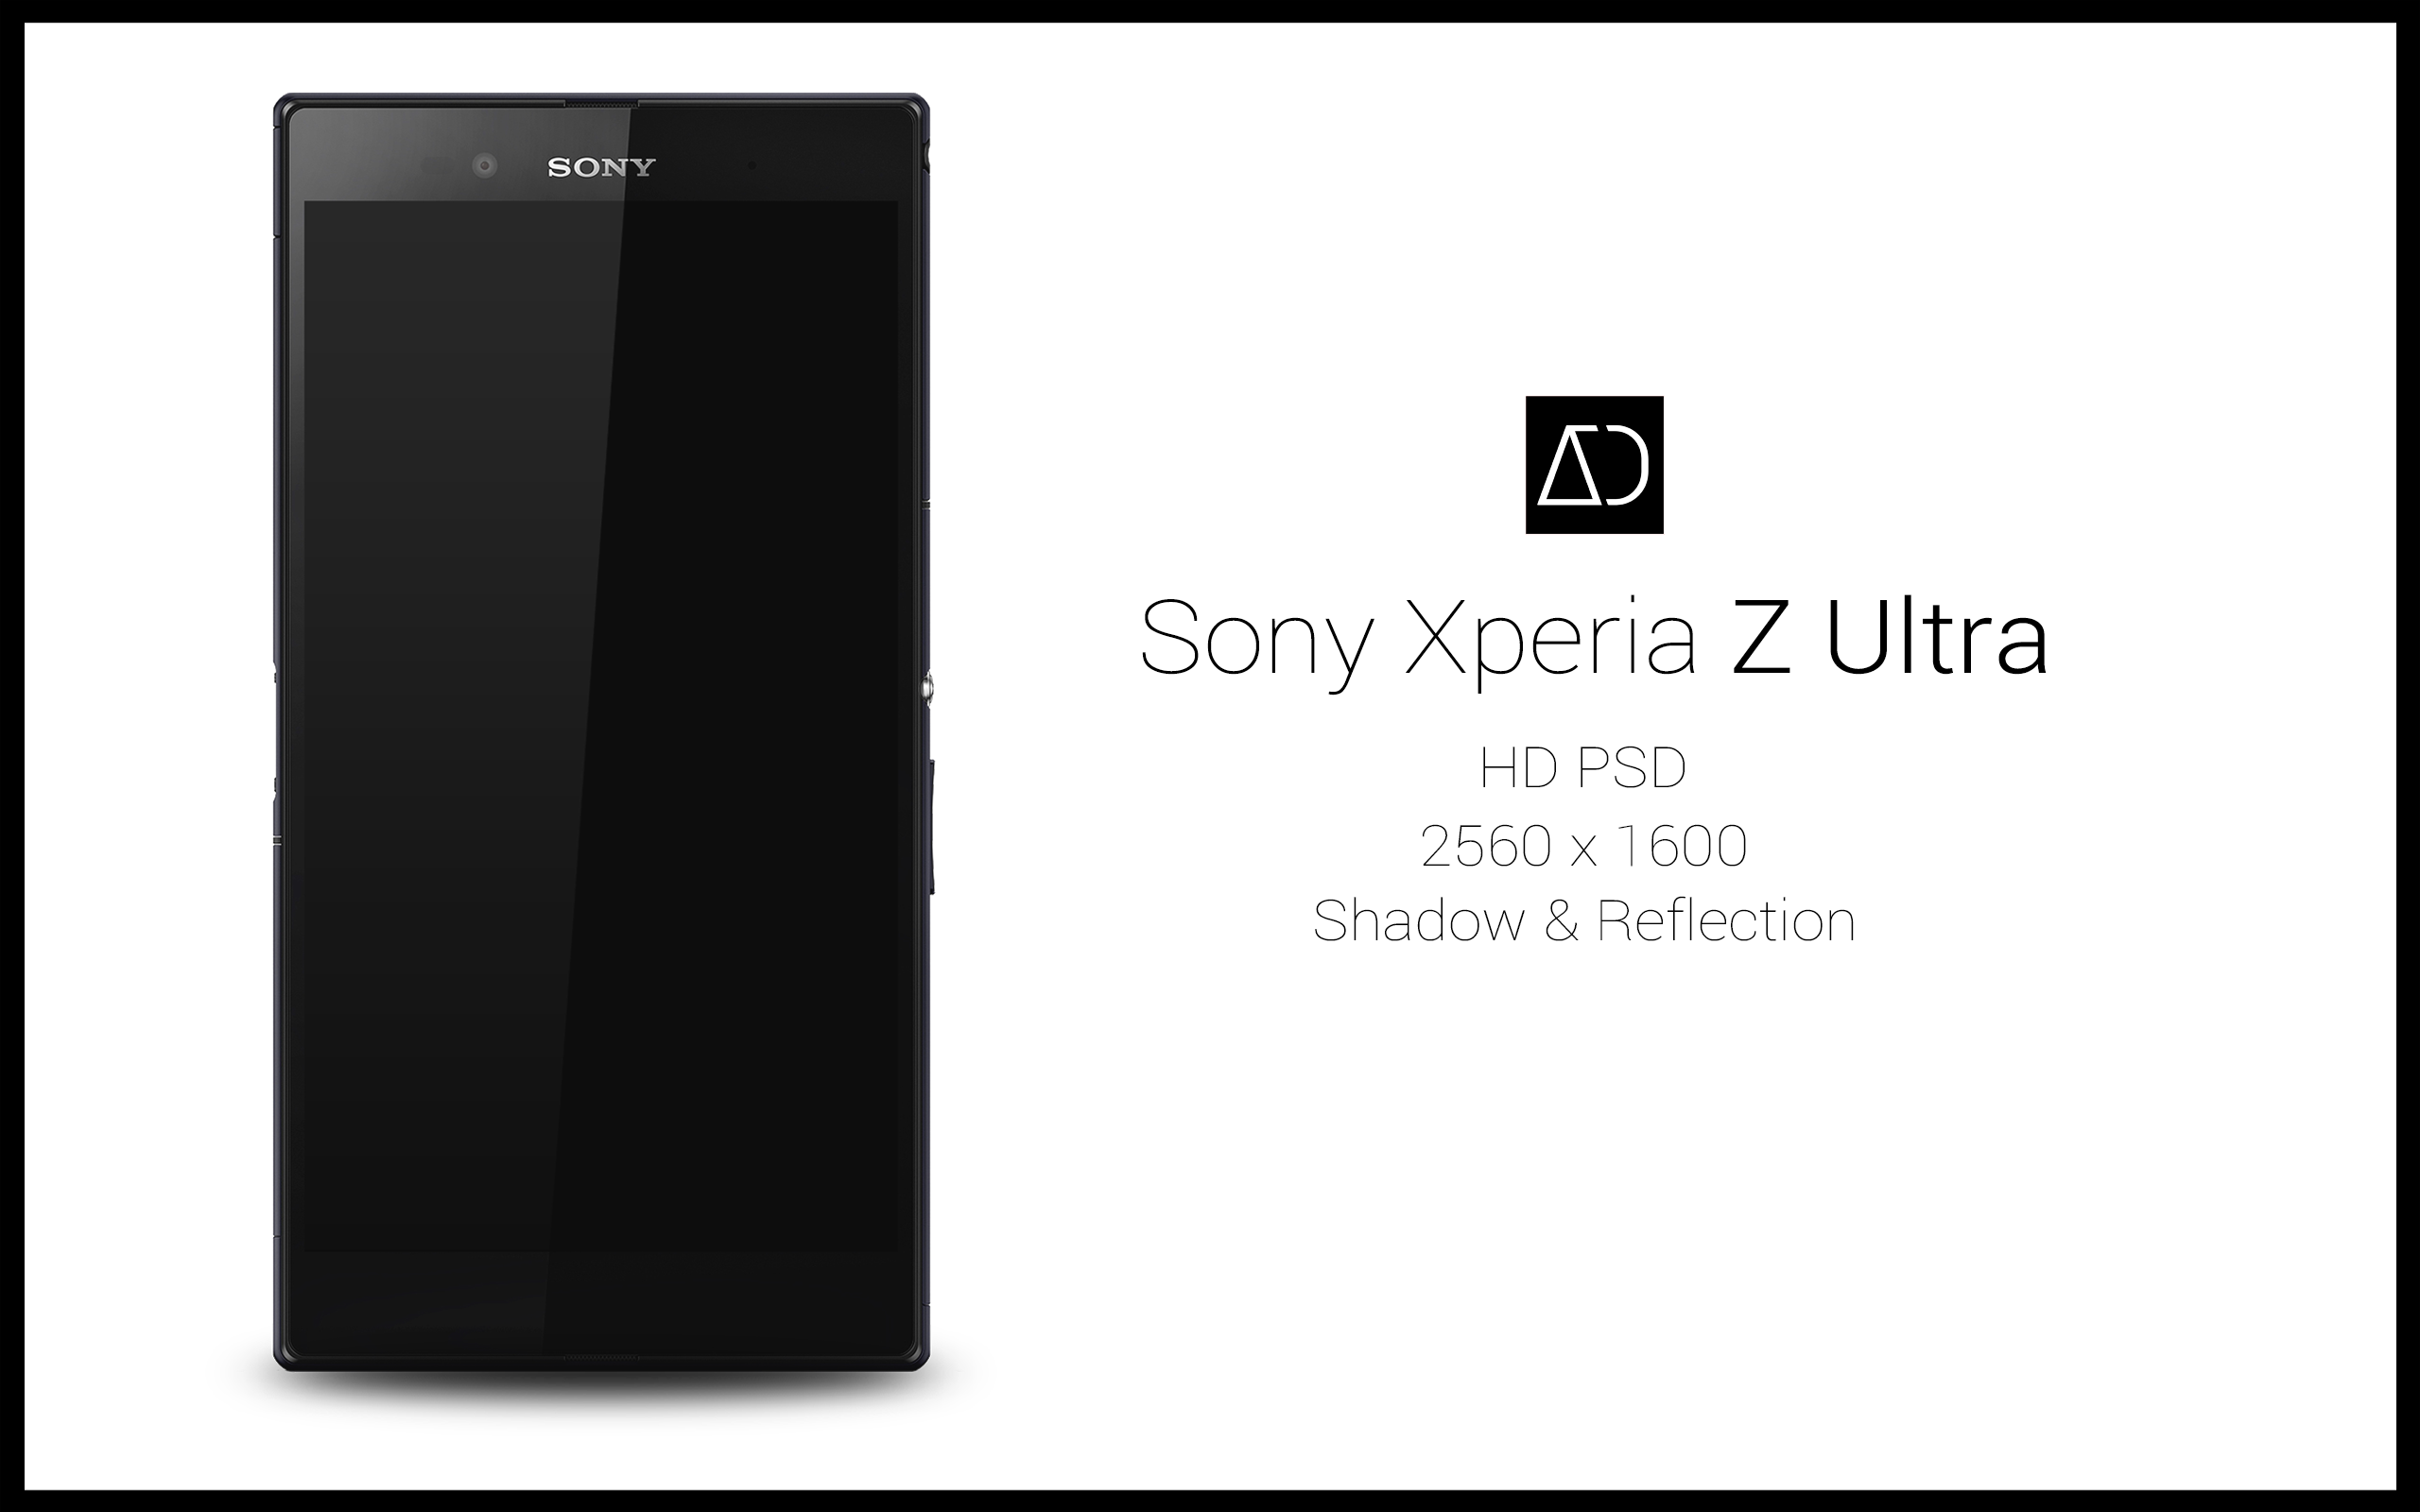 Sony Xperia Z Ultra Psd By Danishprakash On Deviantart